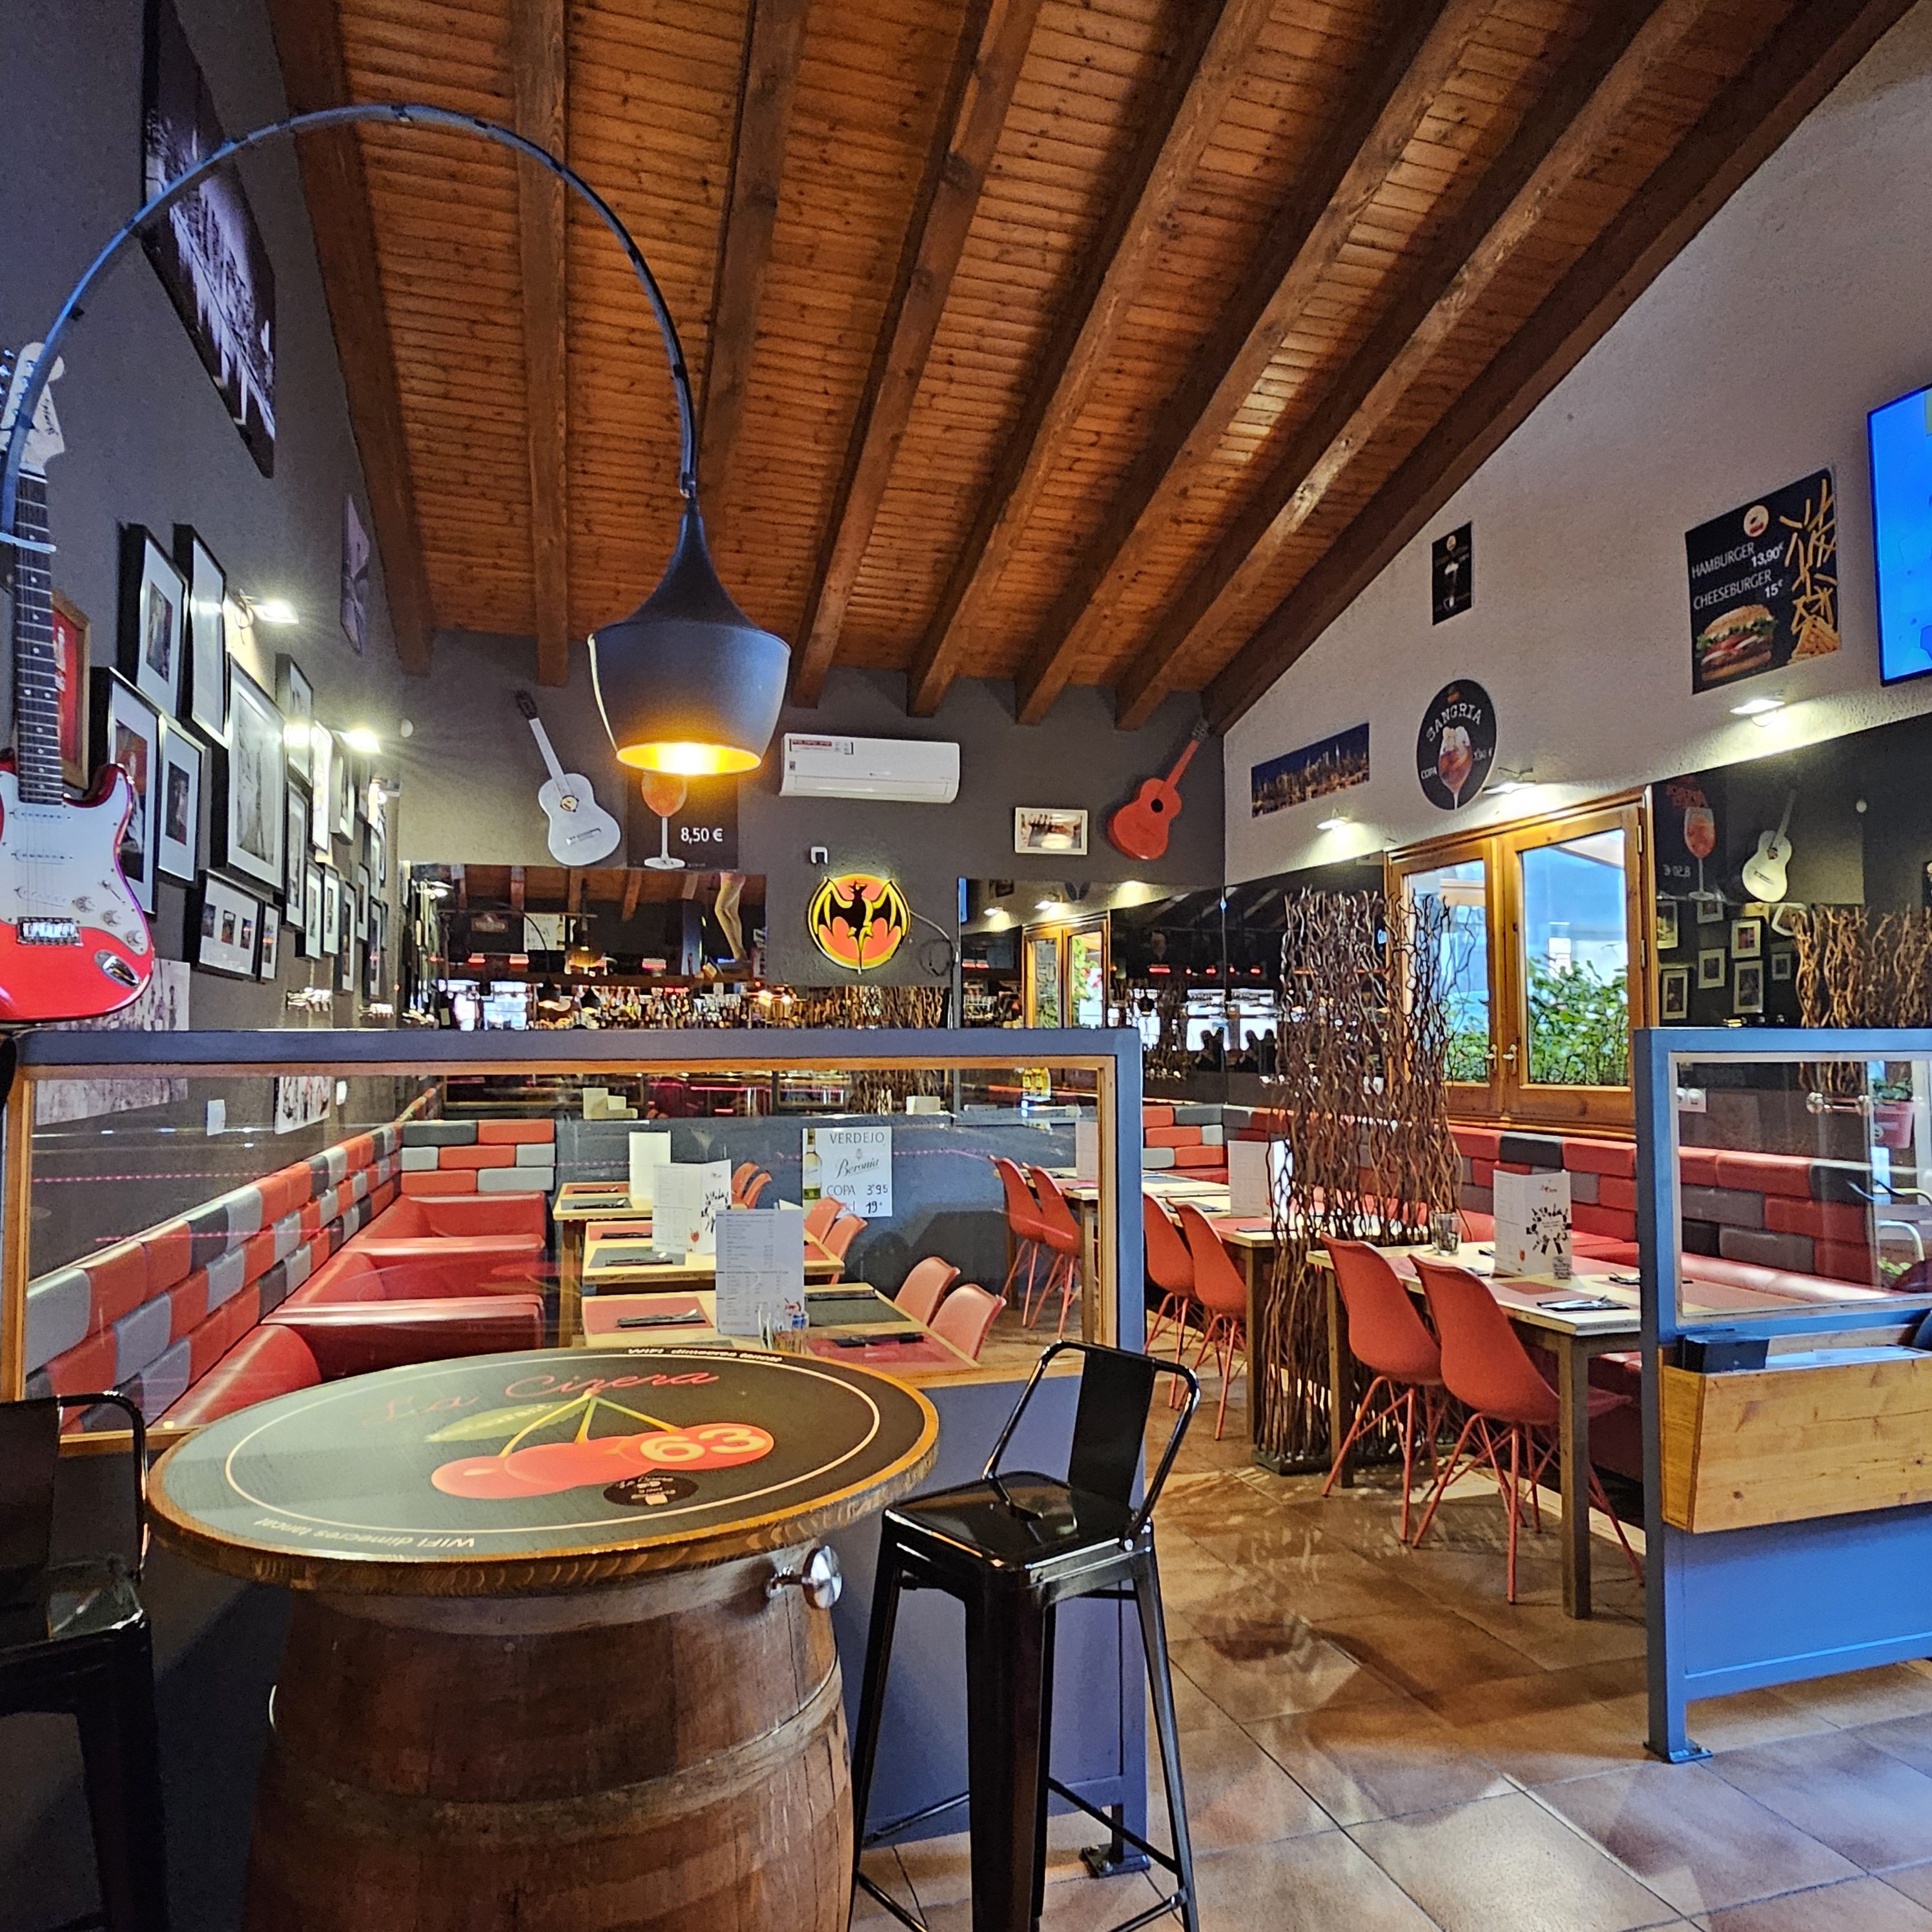 Aquest restaurant es troba en un lloc privilegiat, envoltat de les muntanyes d'Encamp a Andorra, peu de pistes amb unes vistes impressionants. Al seu interior, compta amb una decoració acollidora i elegant que us fa sentir en un ambient especial.